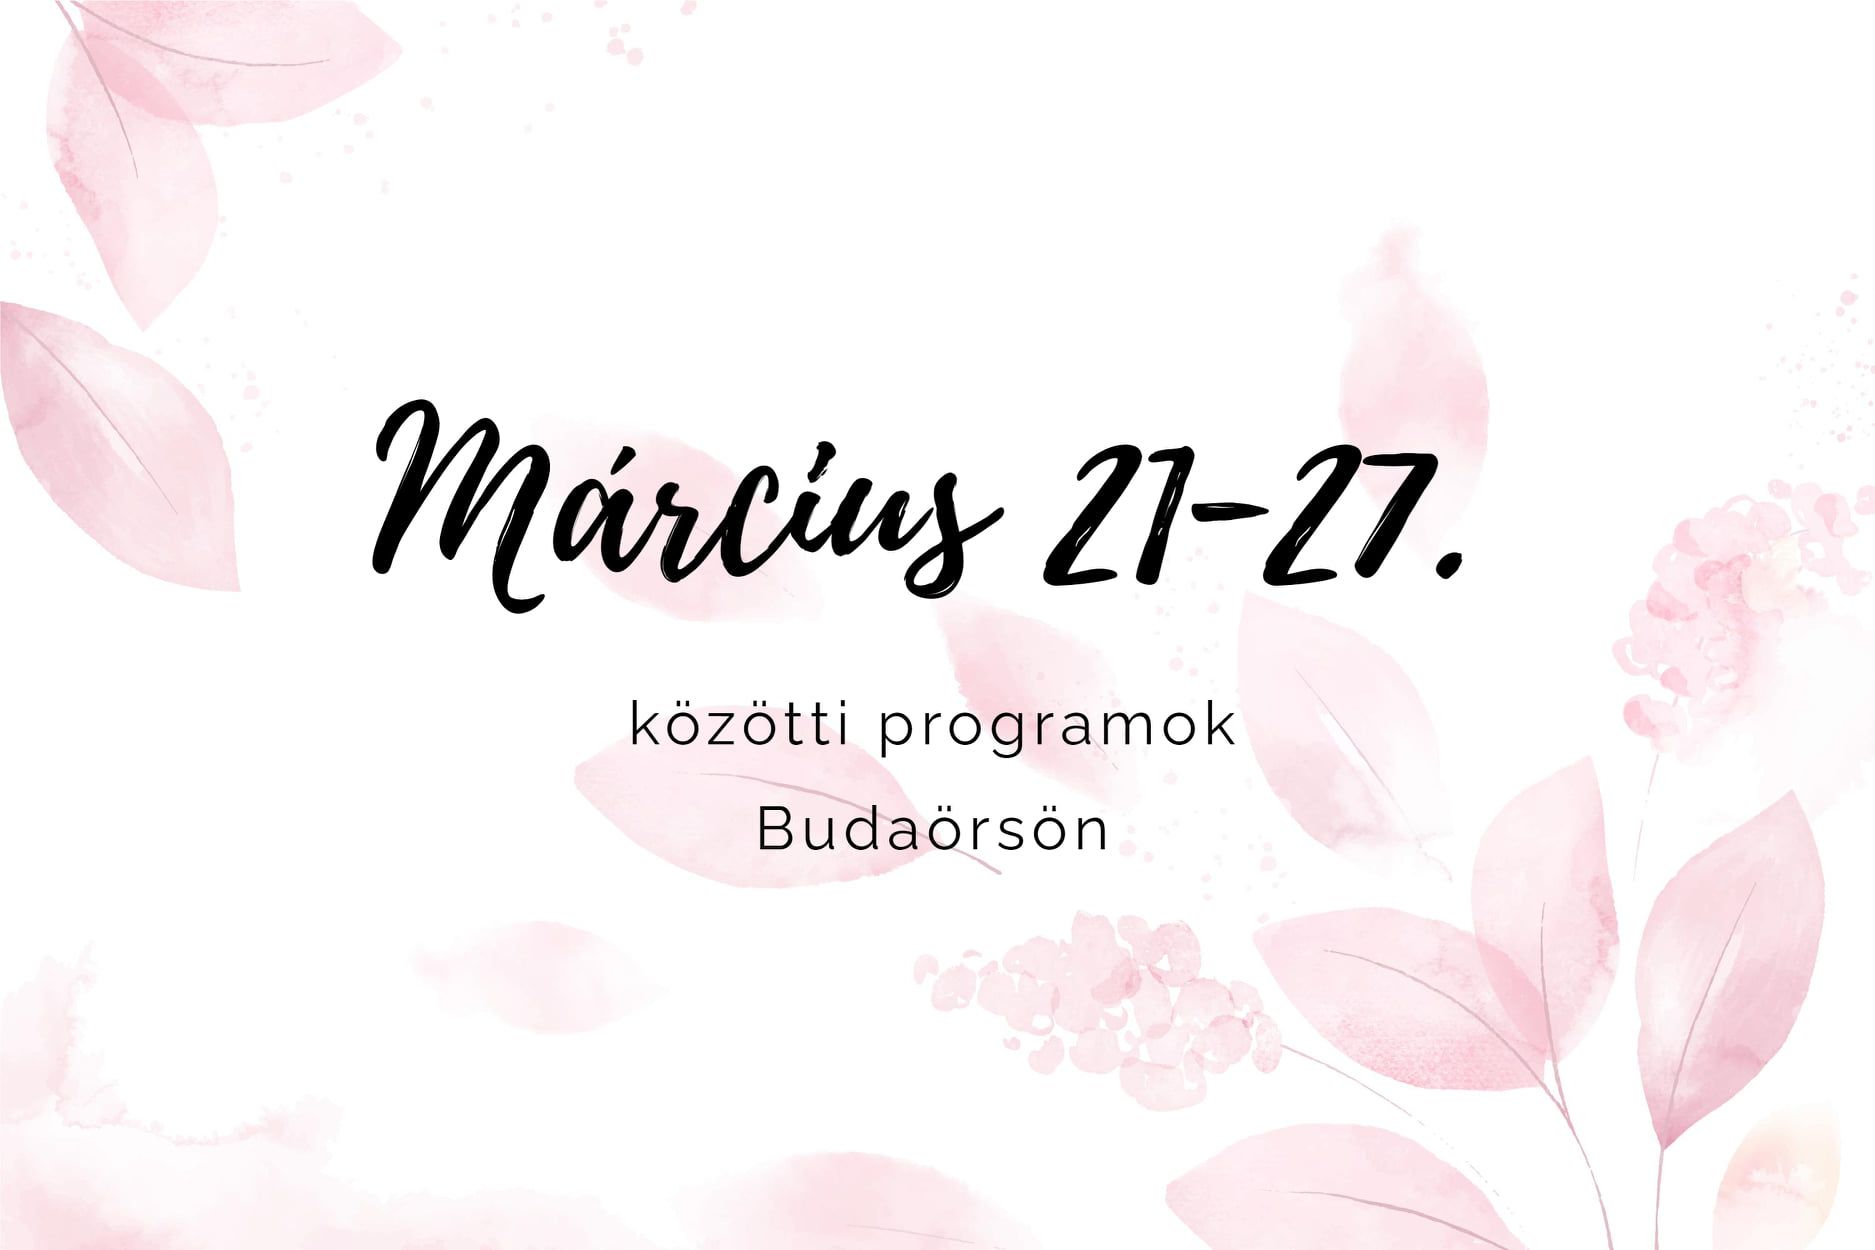 Március 21-27. közötti programok Budaörsön